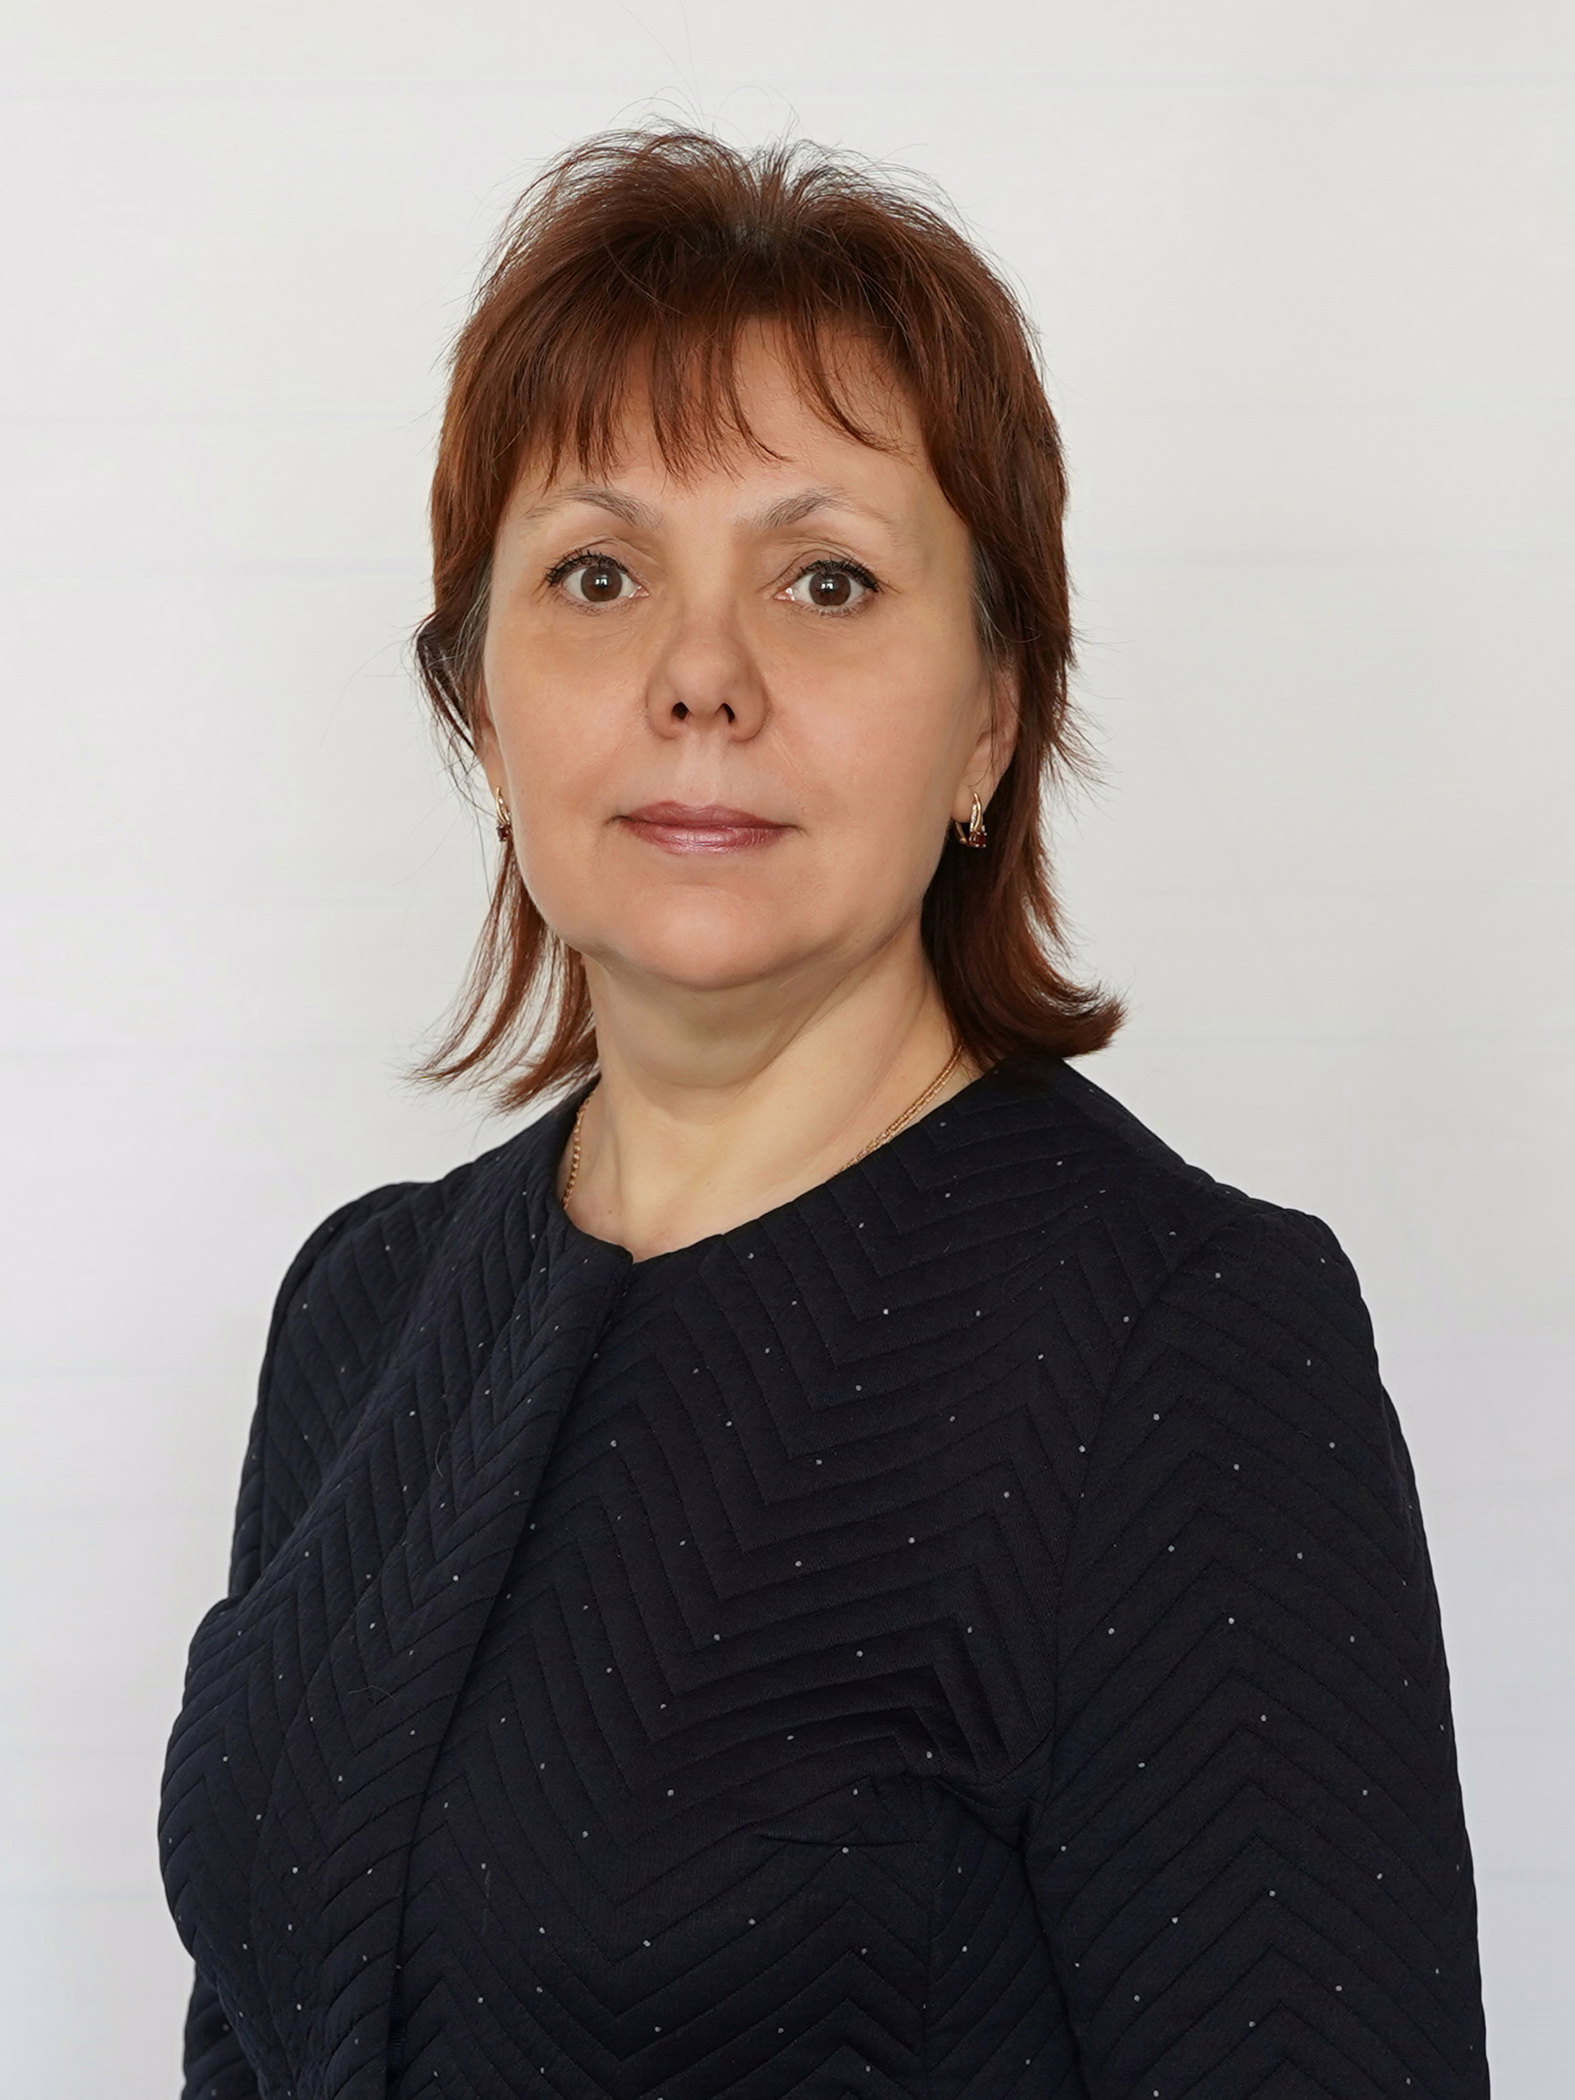 Шупилова Ирина  Леонидовна.